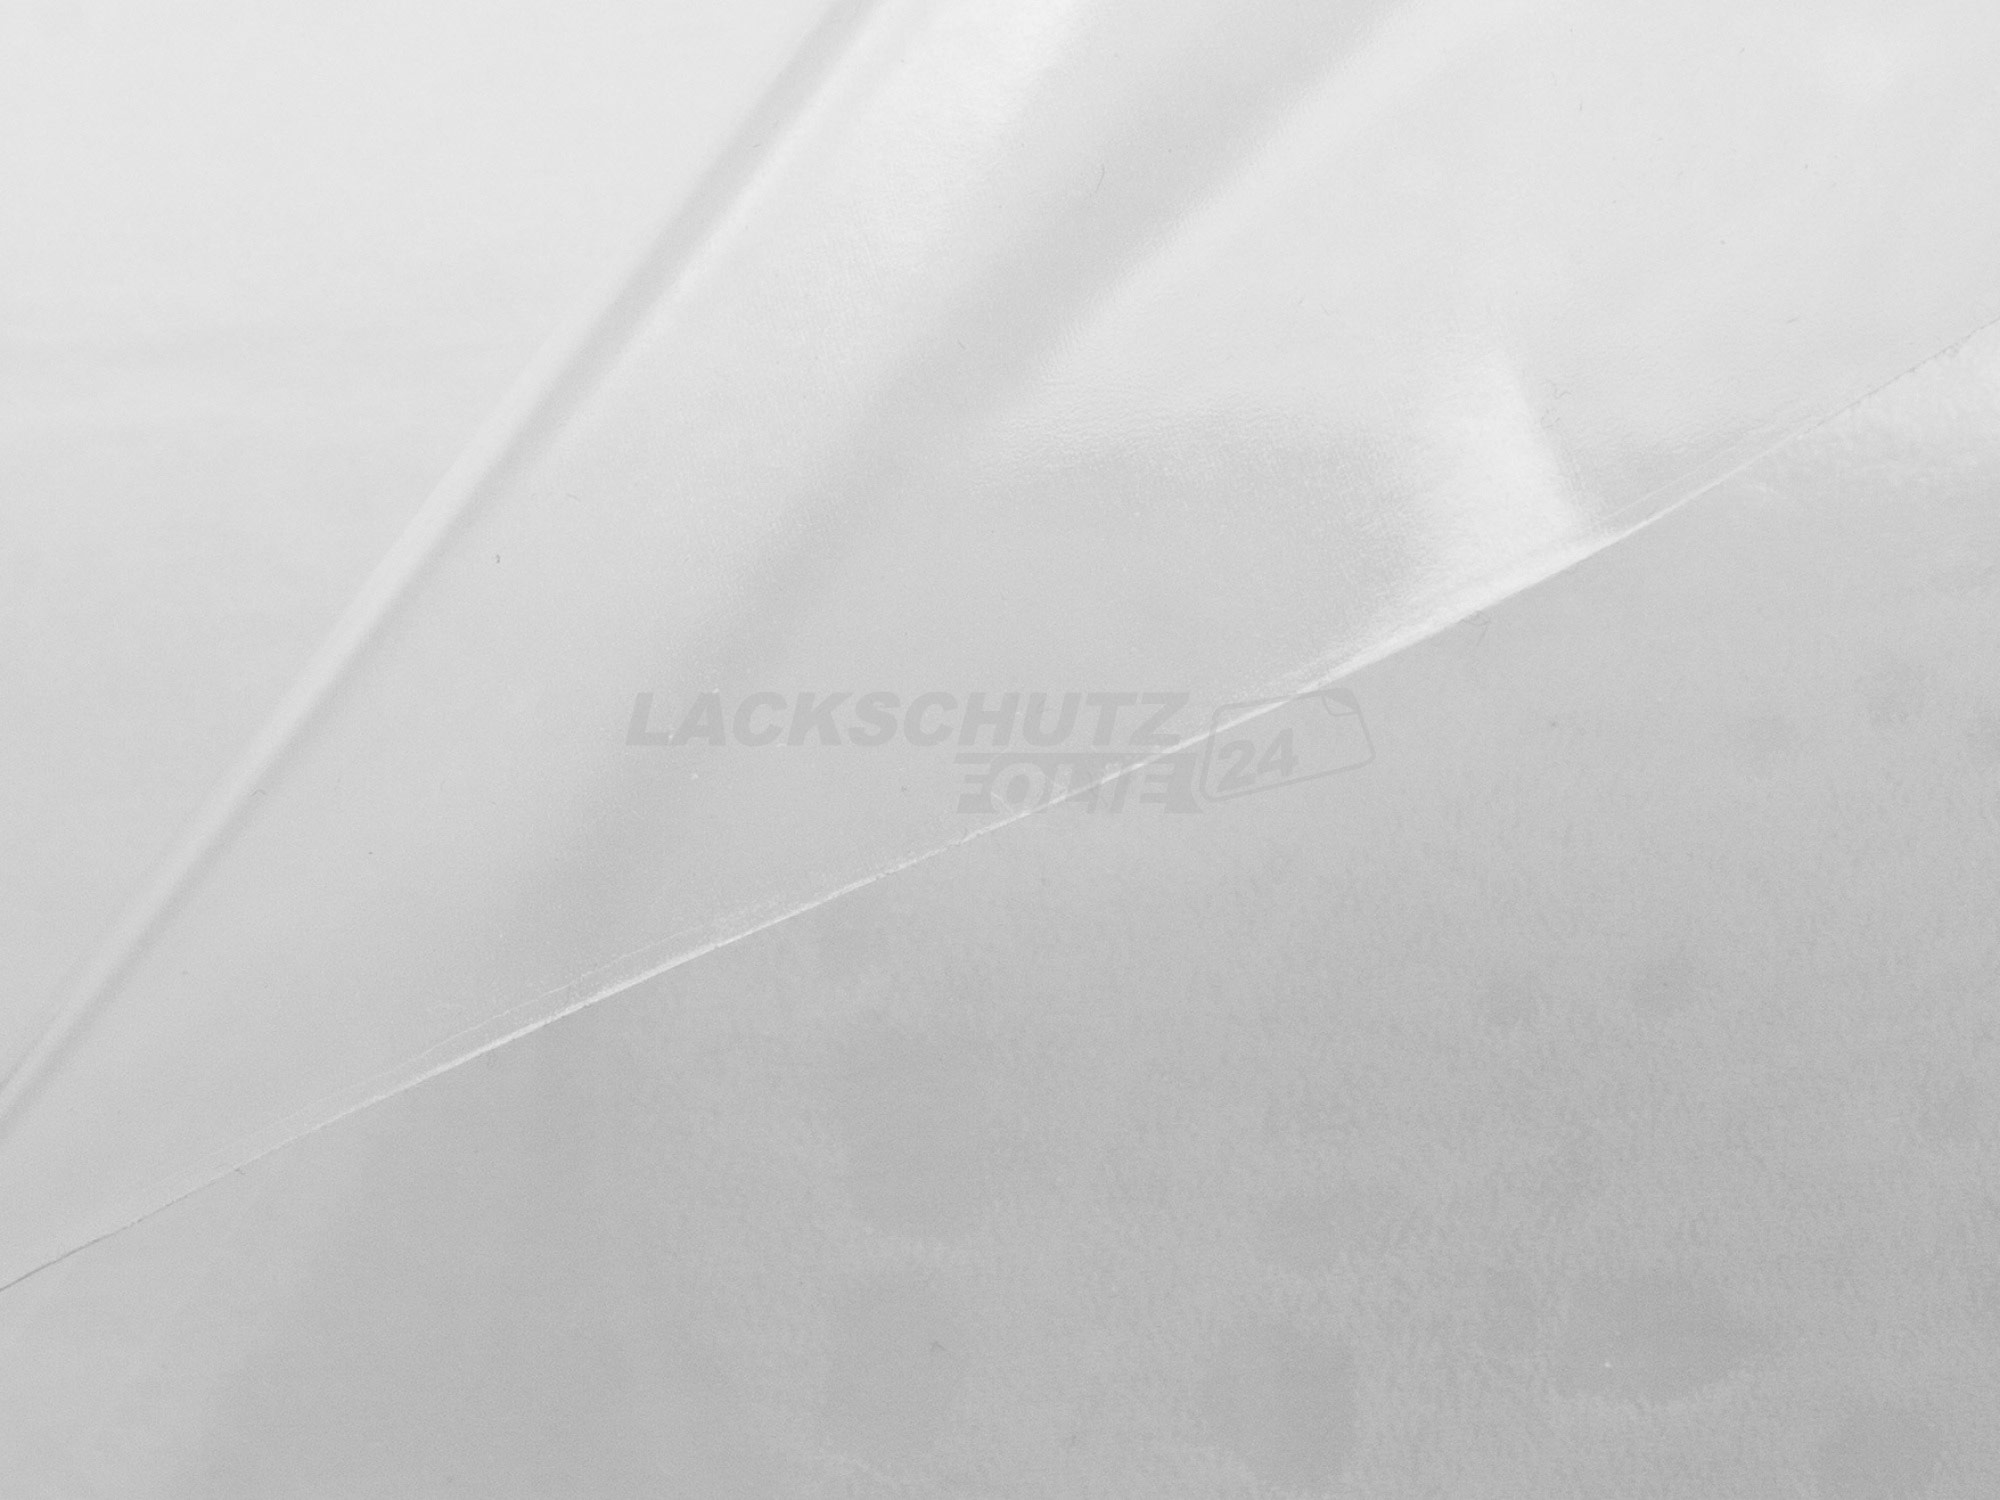 Ladekantenschutzfolie - Transparent Glatt Hochglänzend 150 µm stark für Mercedes-Benz A-Klasse Typ W169, BJ 2004-10/2012